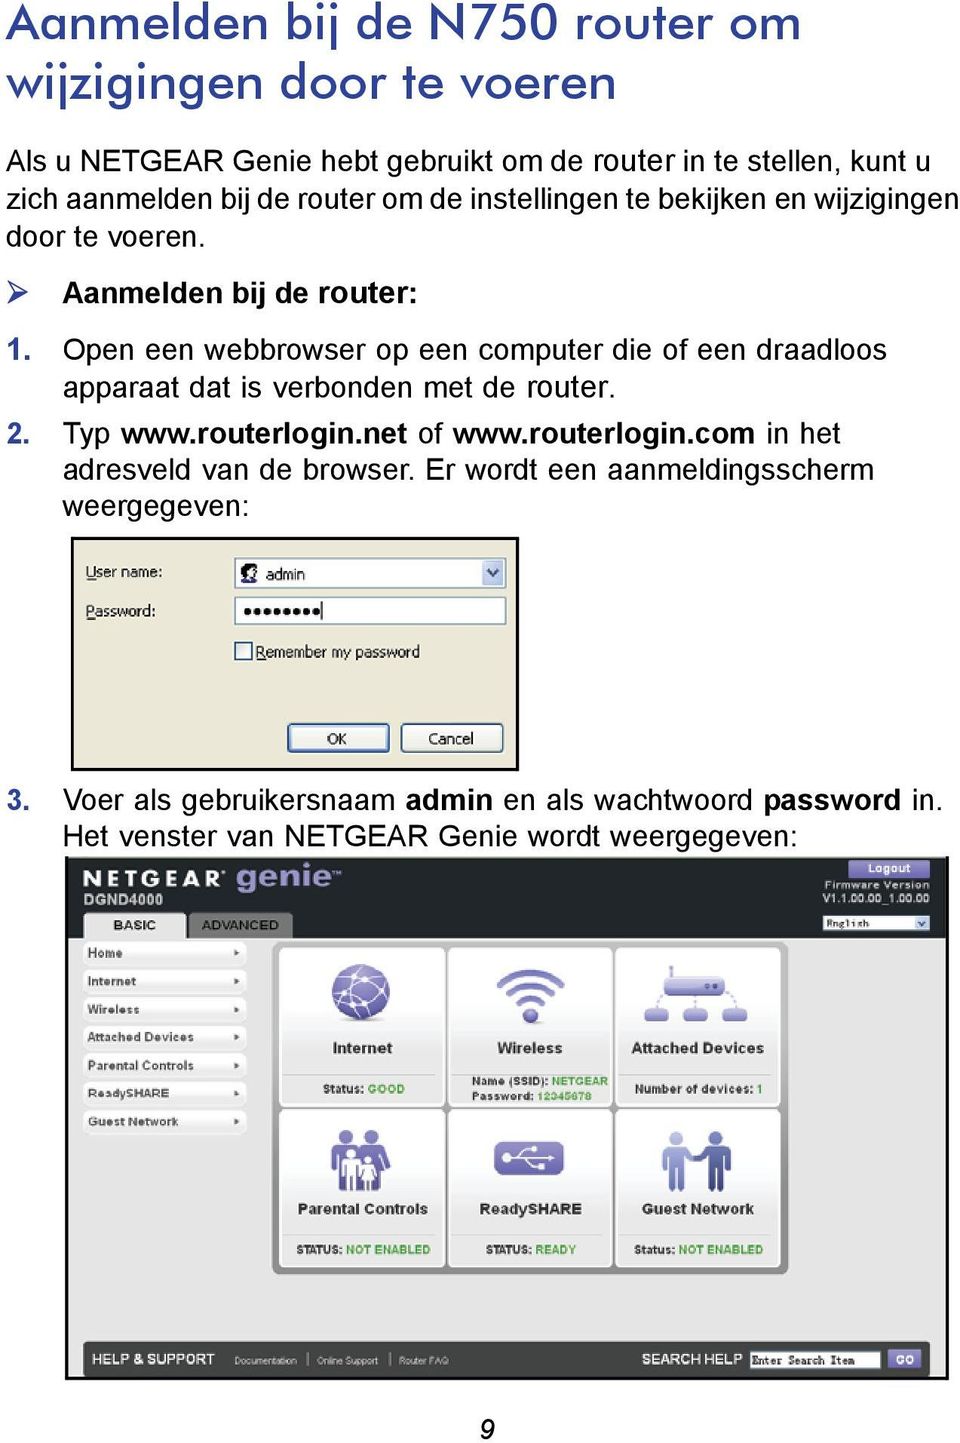 Open een webbrowser op een computer die of een draadloos apparaat dat is verbonden met de router. 2. Typ www.routerlogin.